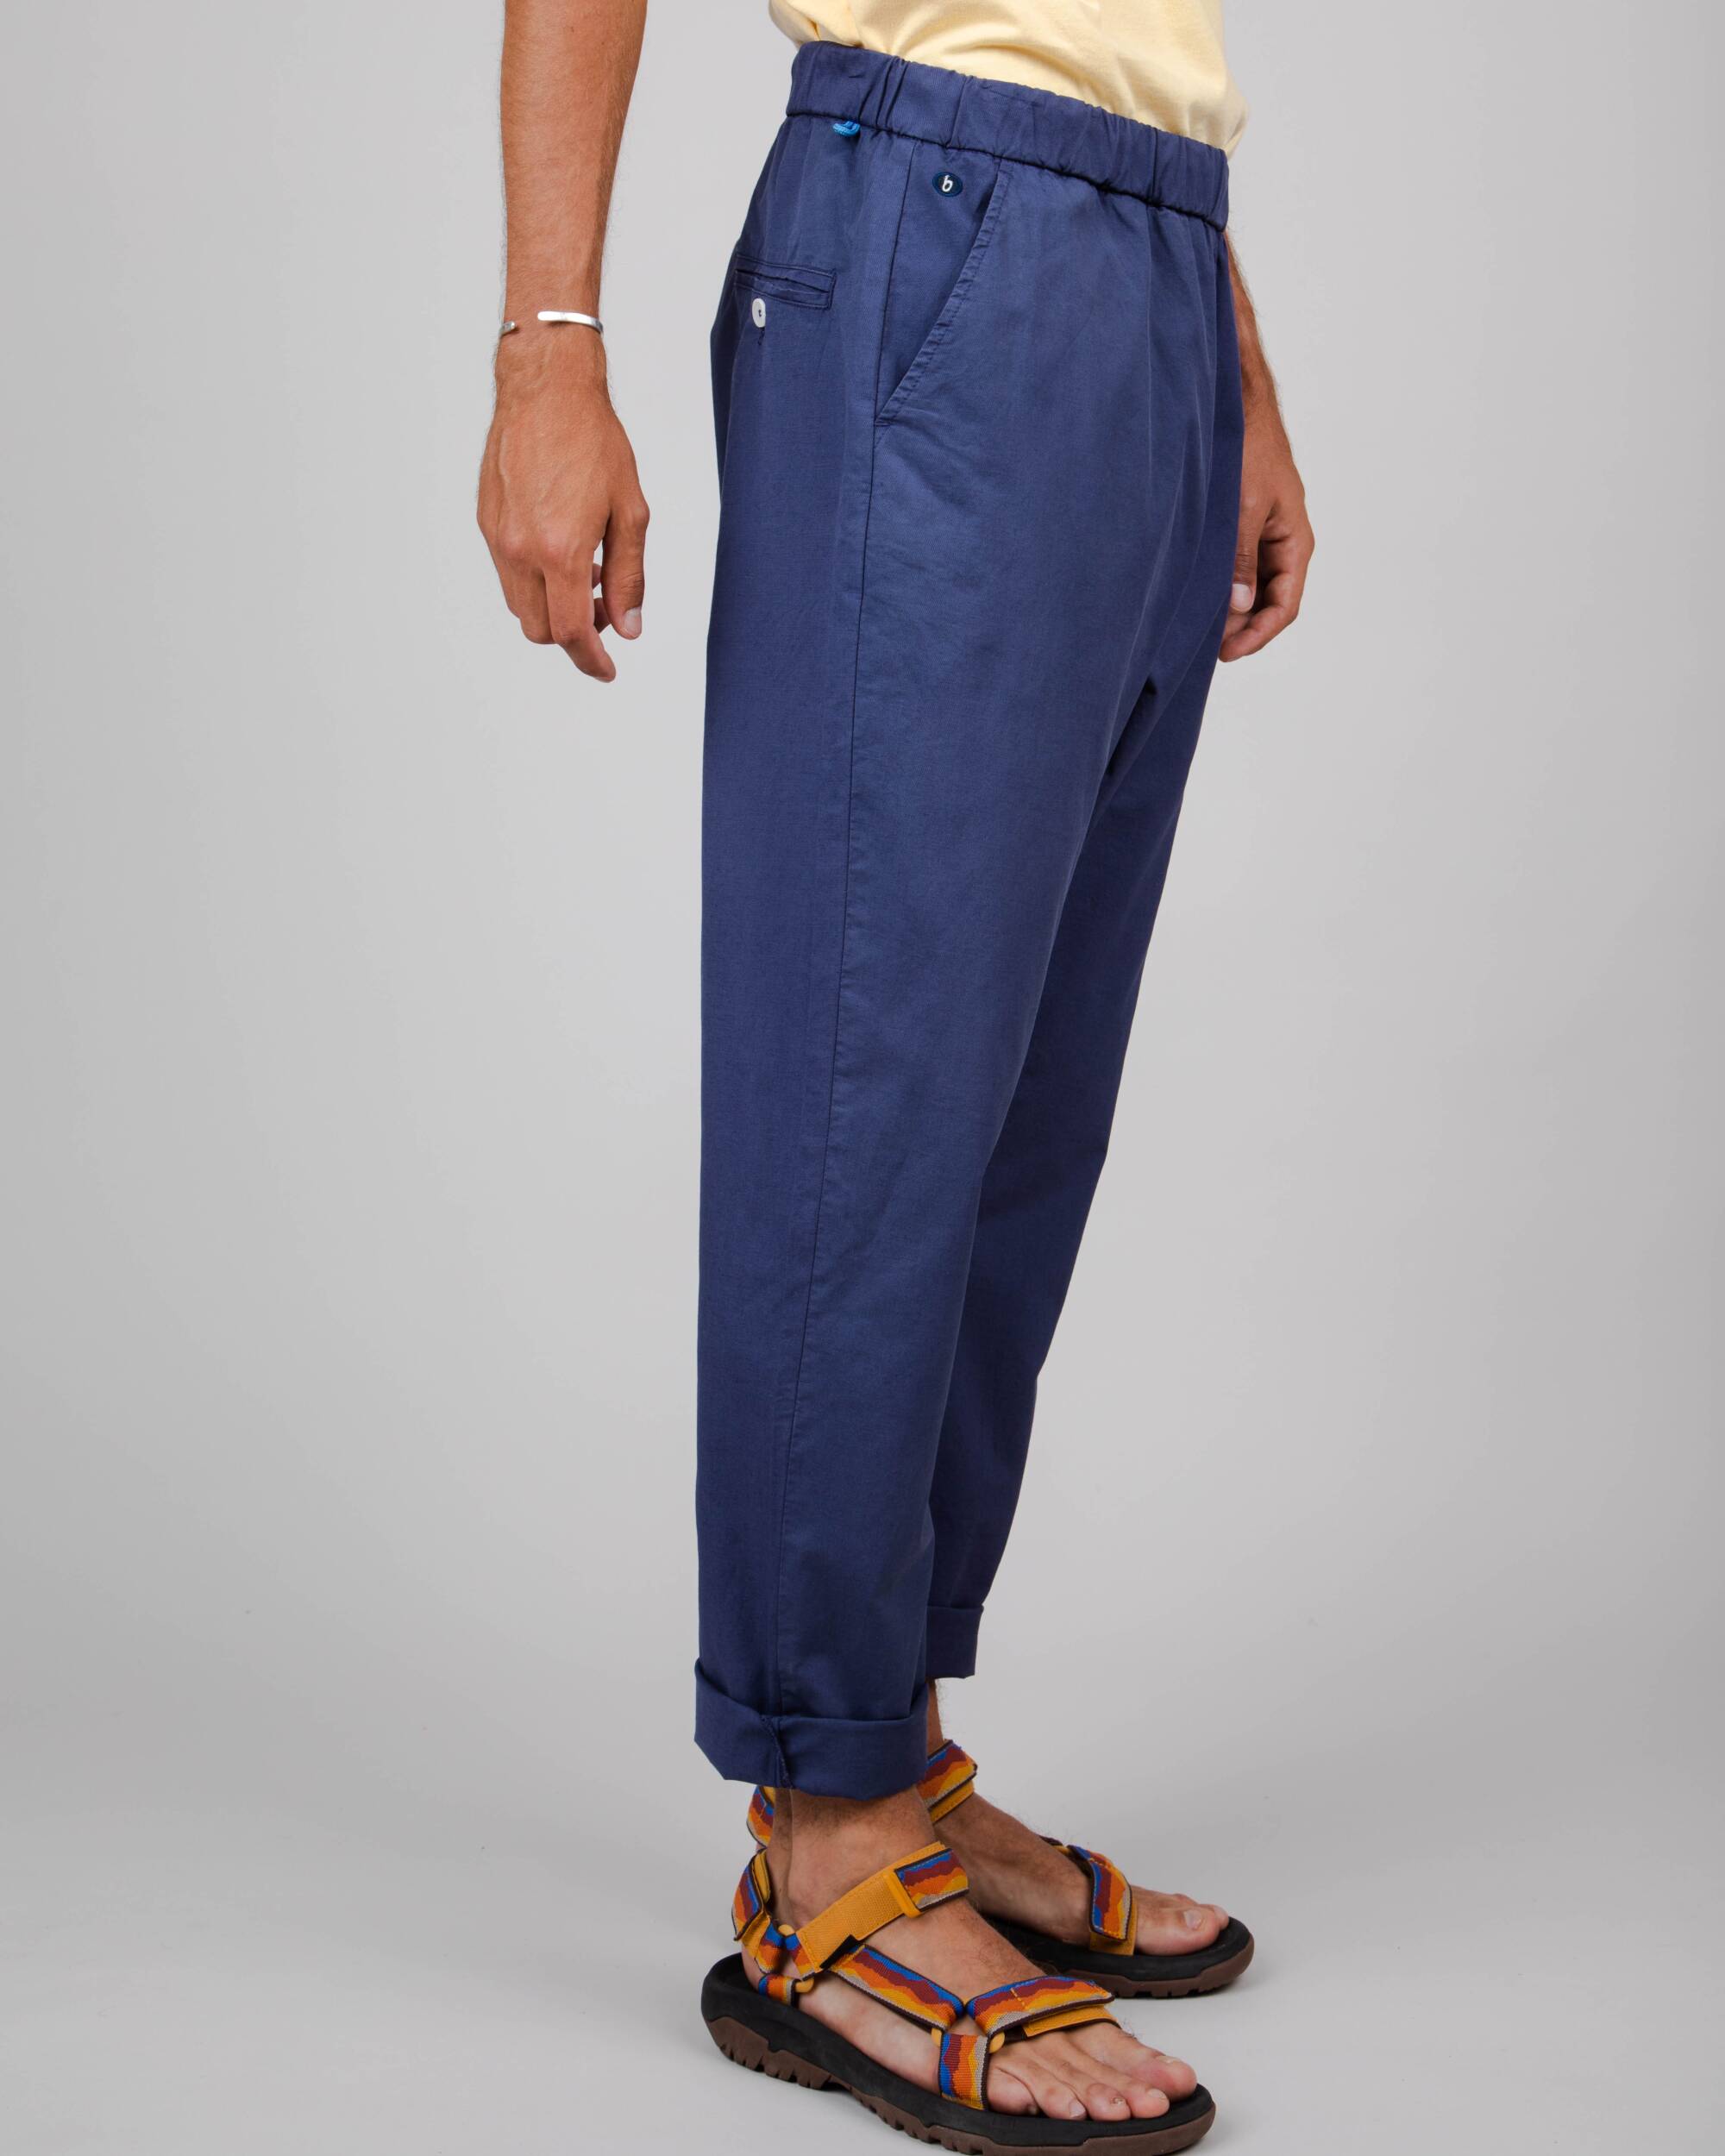 Pantalon oversize bleu foncé en coton biologique de Brava Fabrics